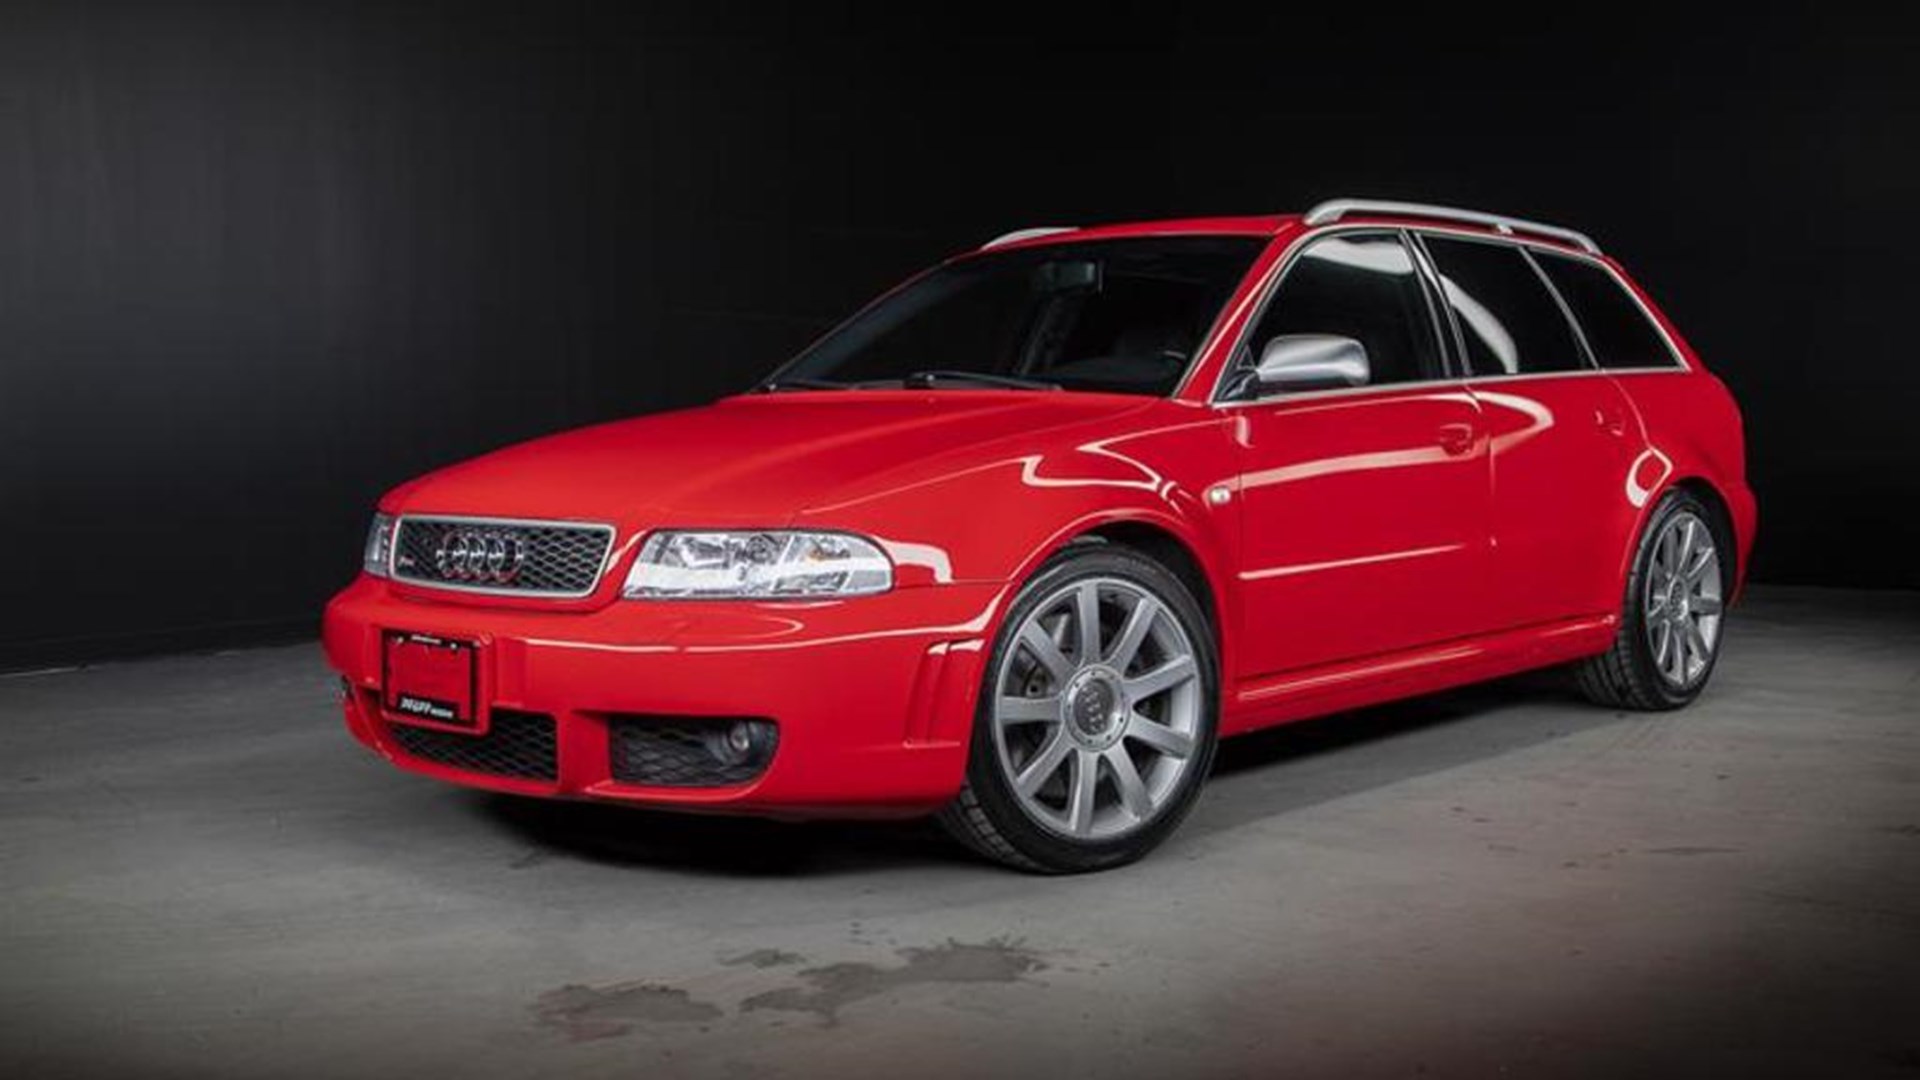 Ауди 4 2001 год. Audi rs4 2001. Audi rs4 b5. Audi rs4 1997. Ауди рс4 Авант 2000.